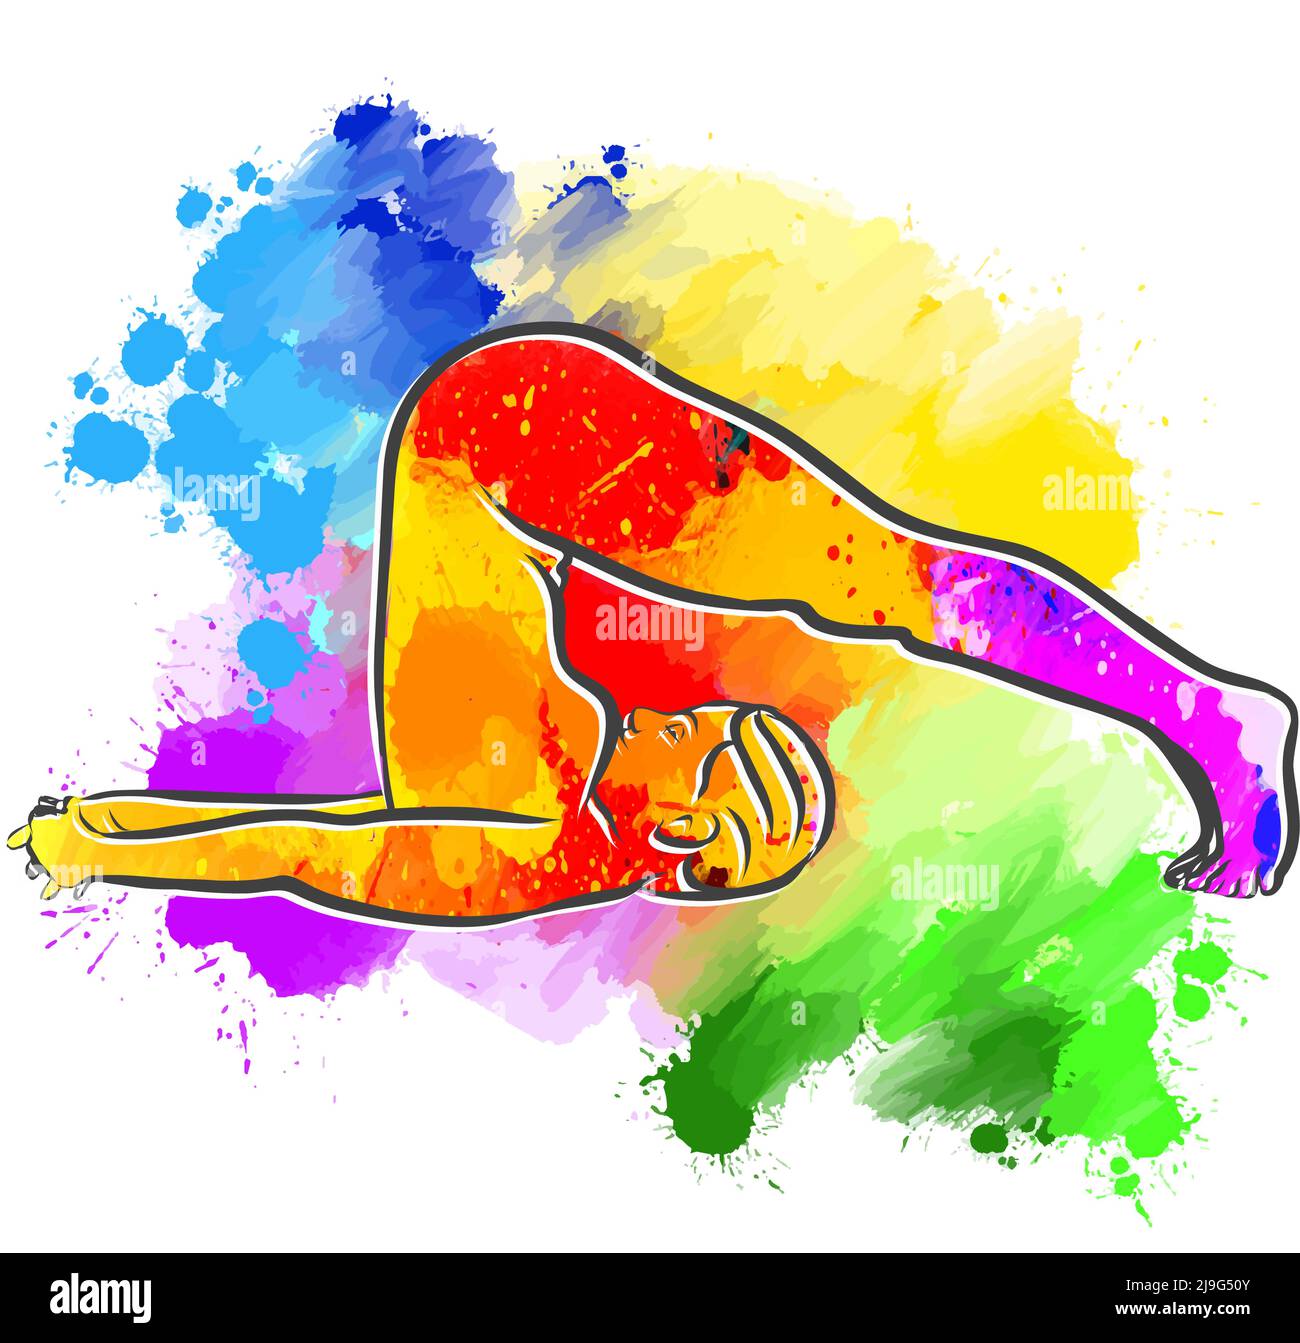 Farbenfrohe Halasana Plough Yoga-Pose. Handgezeichnete Vektorgrafik. Zentriertes Layout für Web- und Druckzwecke. Stock Vektor